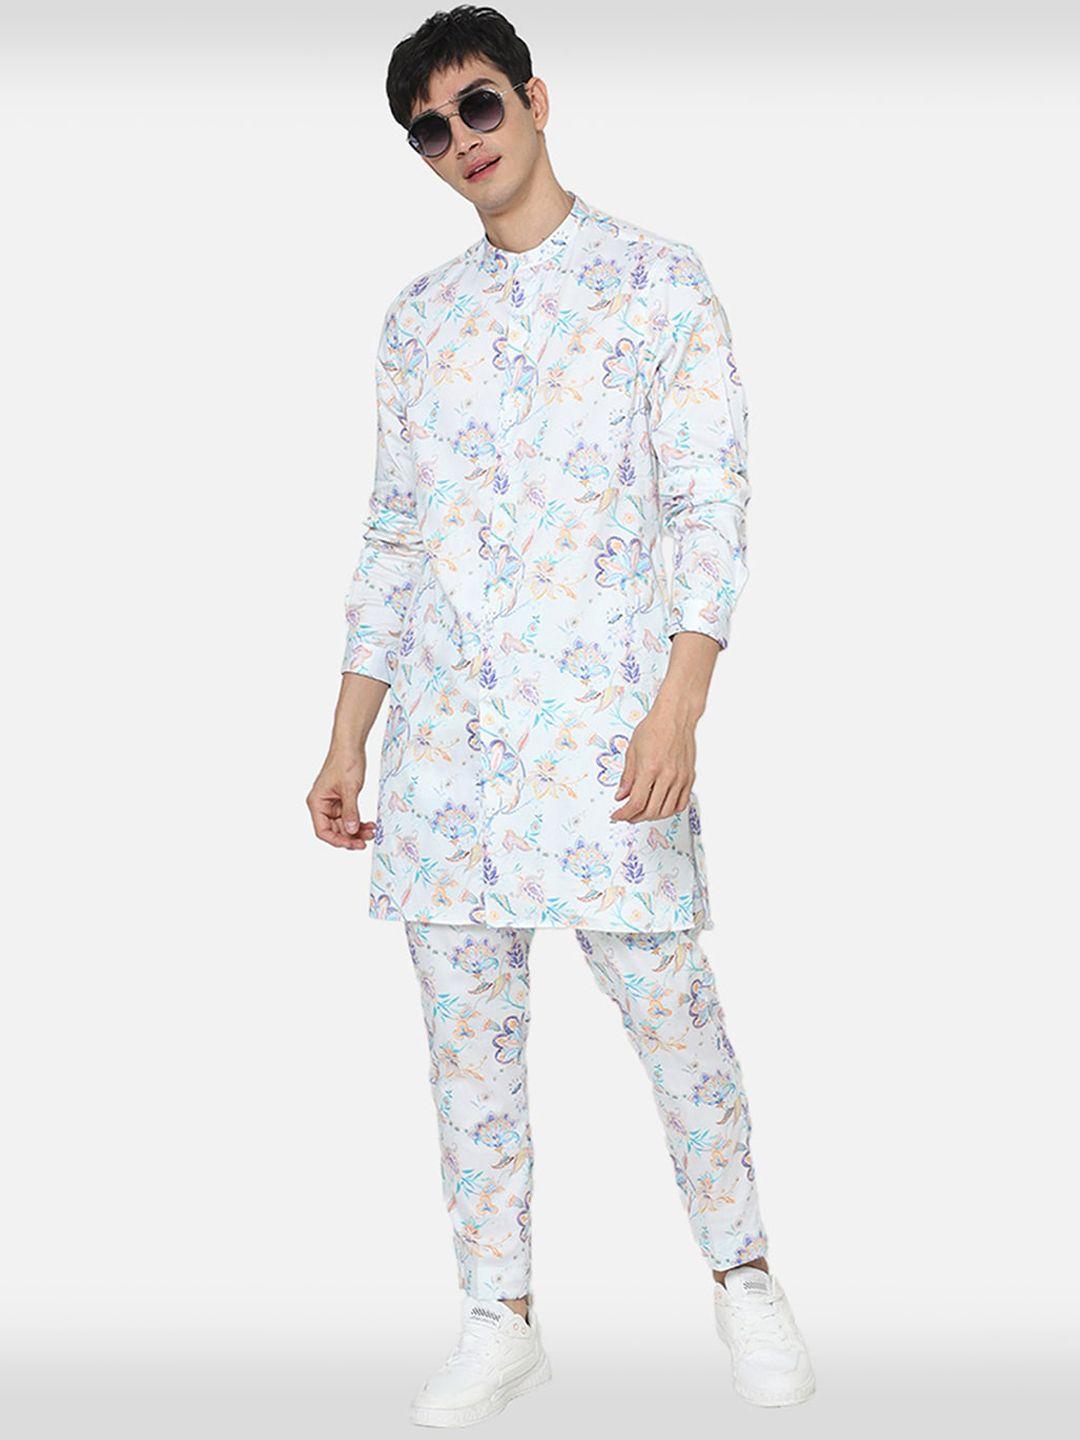 komal kothari floral printed straight pure cotton kurta with pyjamas